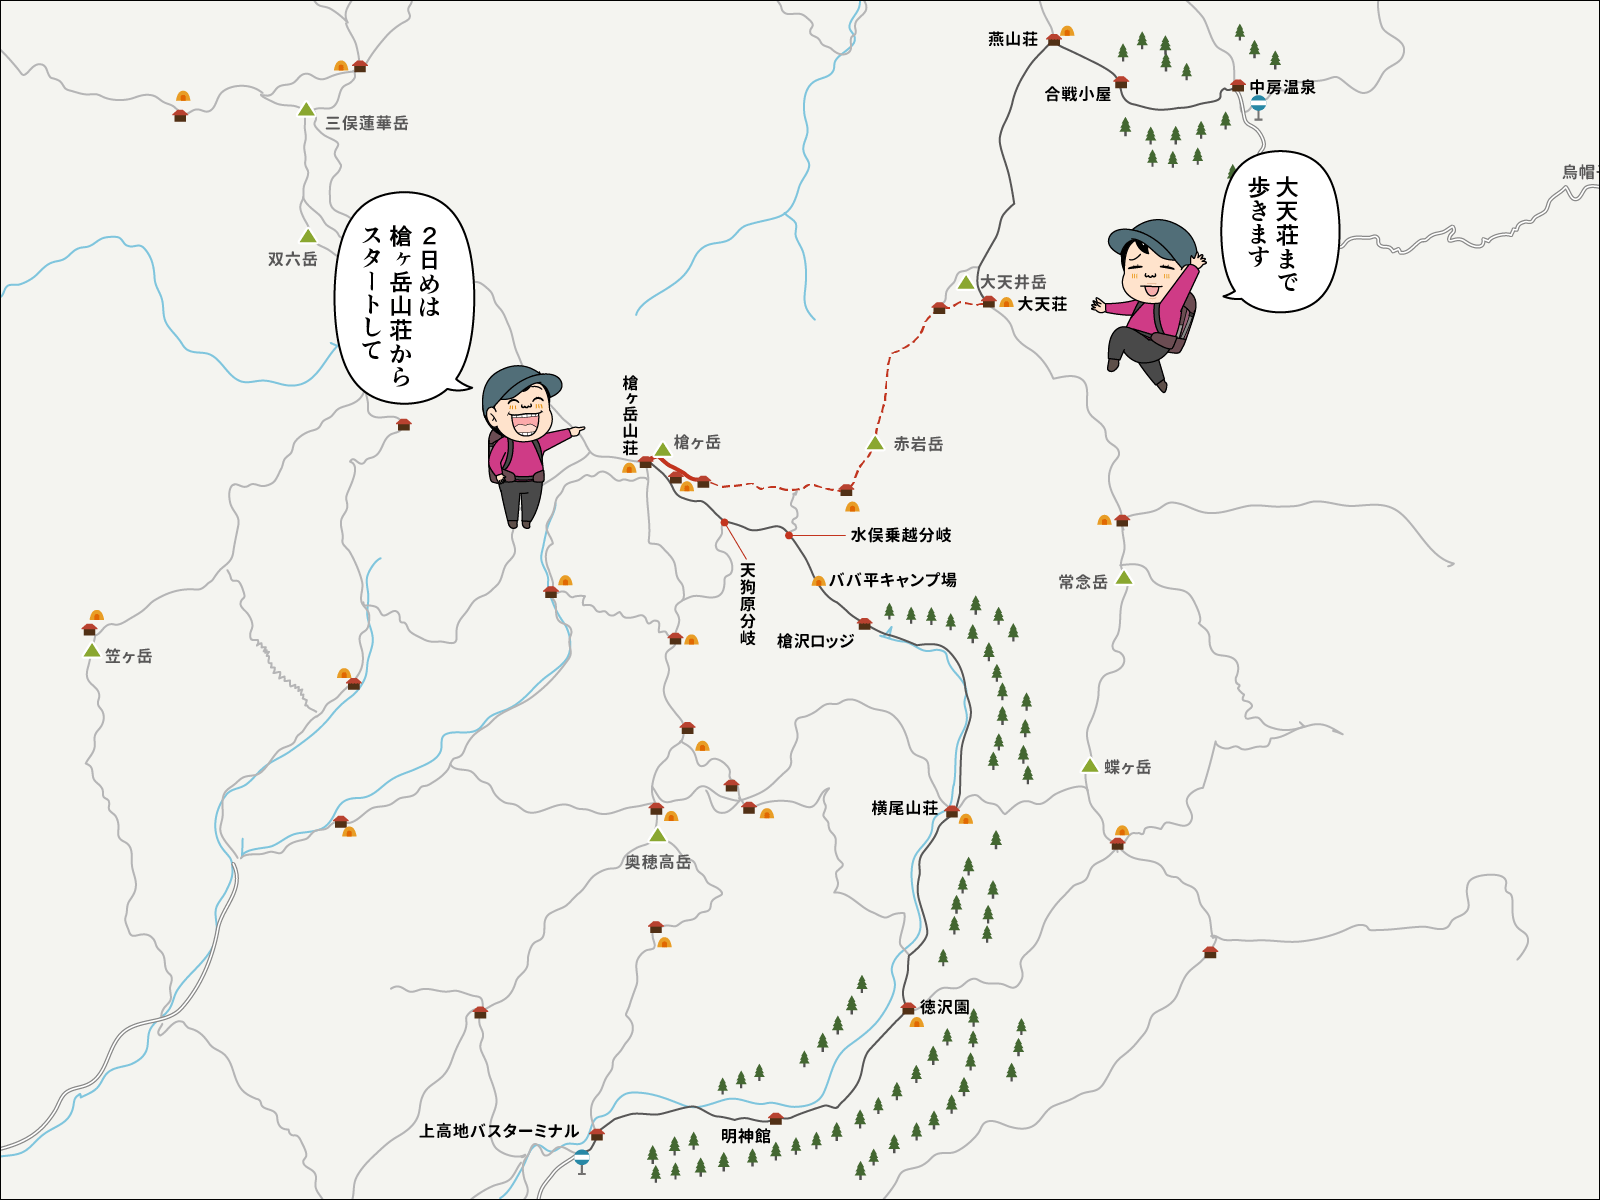 槍ヶ岳山荘から大天荘までのイラストマップ